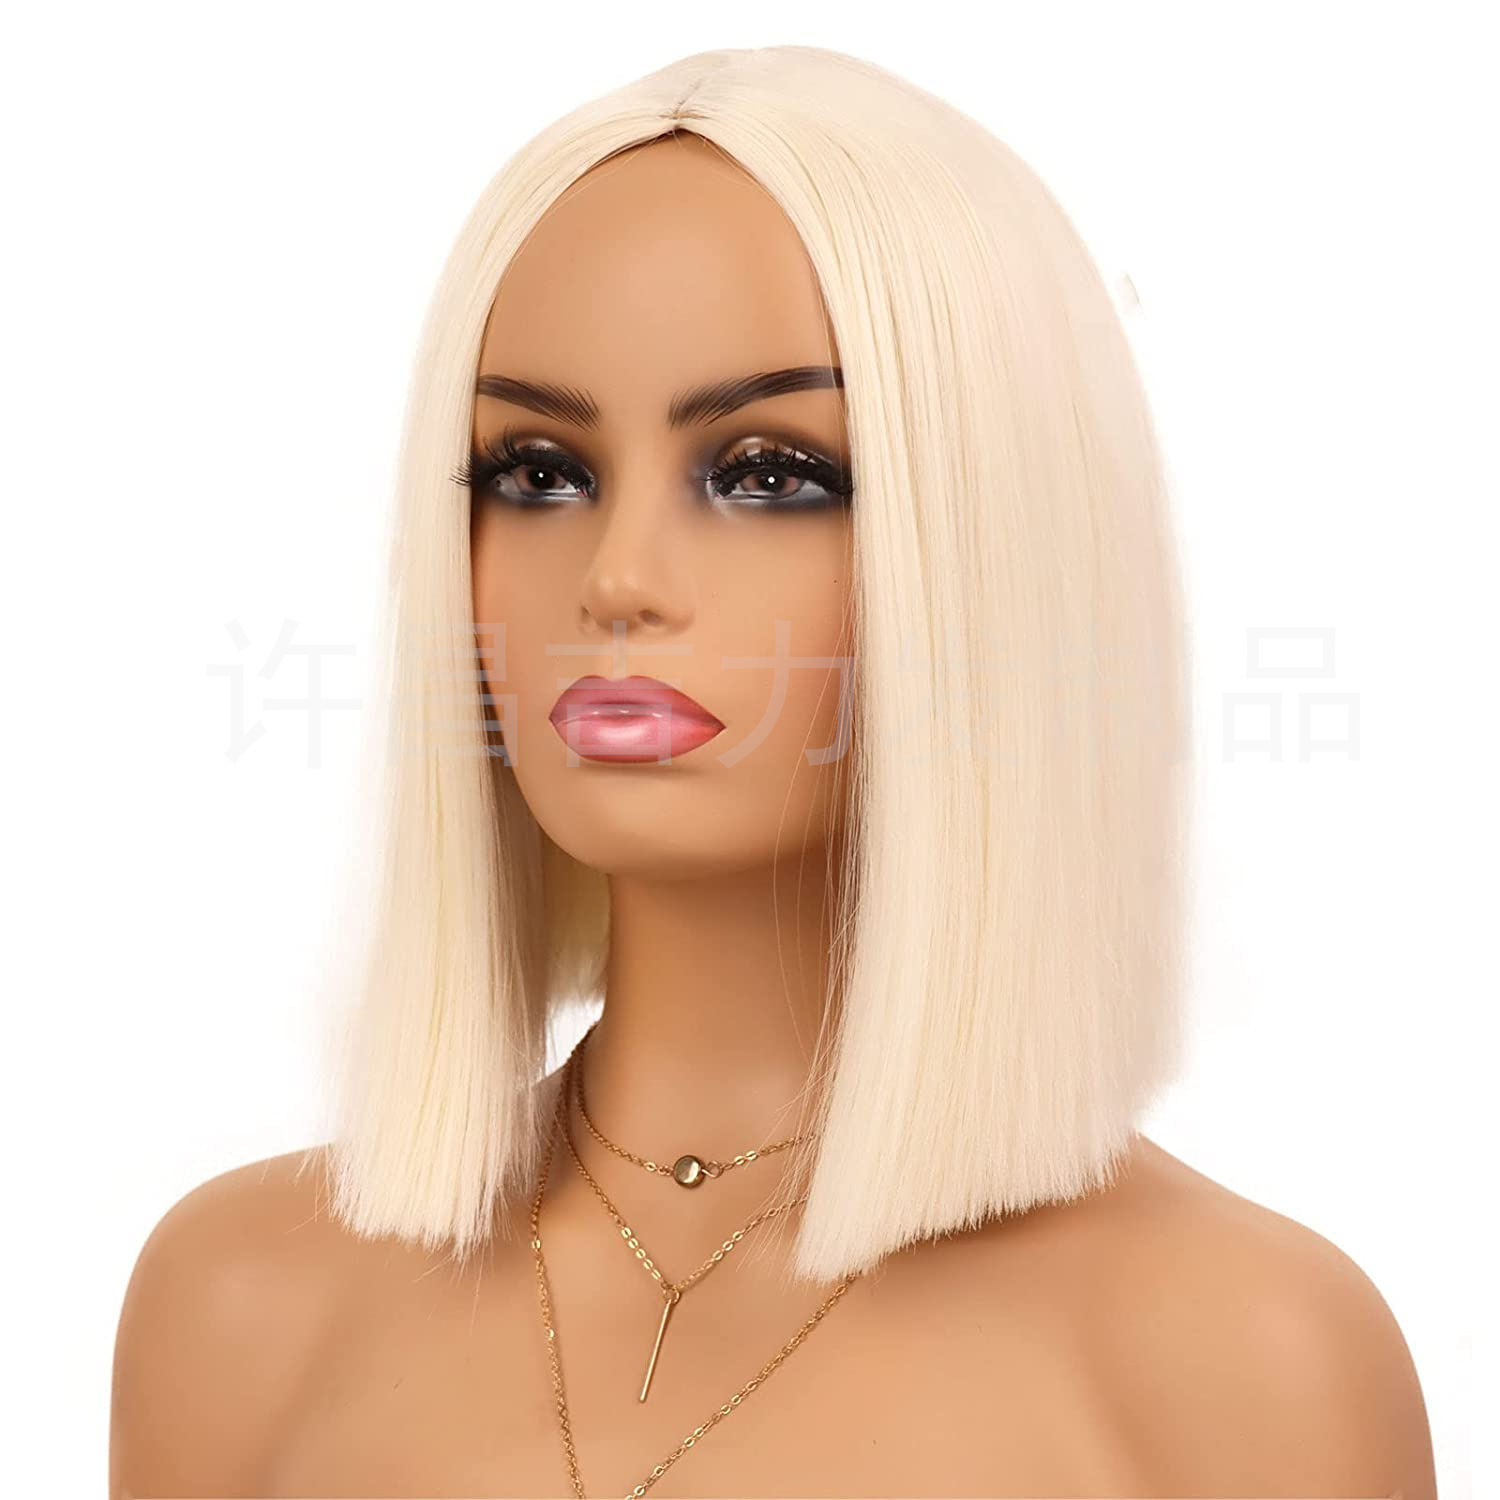 吉娅 模特假发 甜美醒目带壳假发F143款 模特道具 实拍假发wig_吉娅模特道具